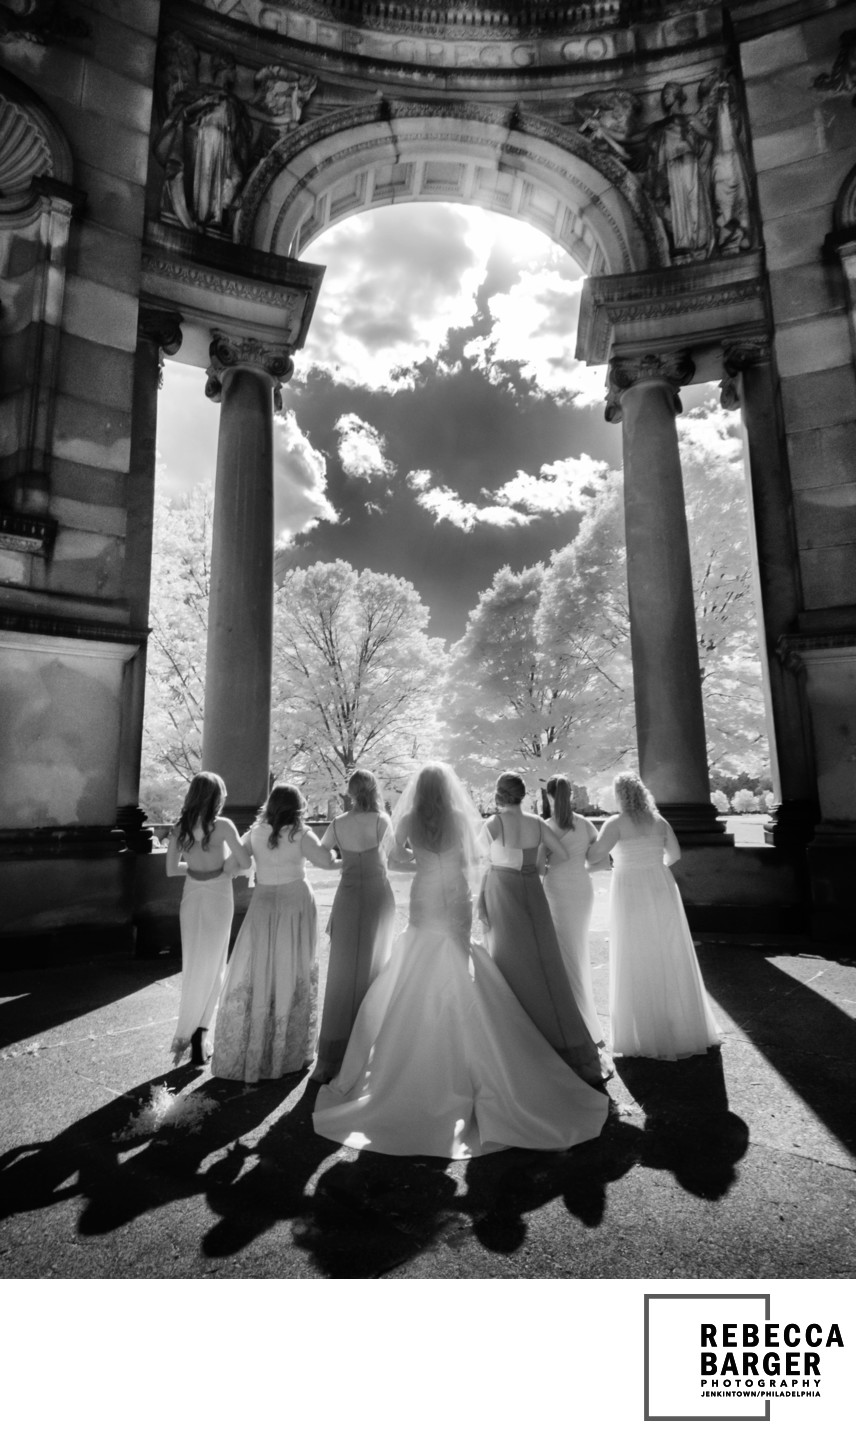 Sunlit bridesmaids, Please Touch Museum, Fairmount Park